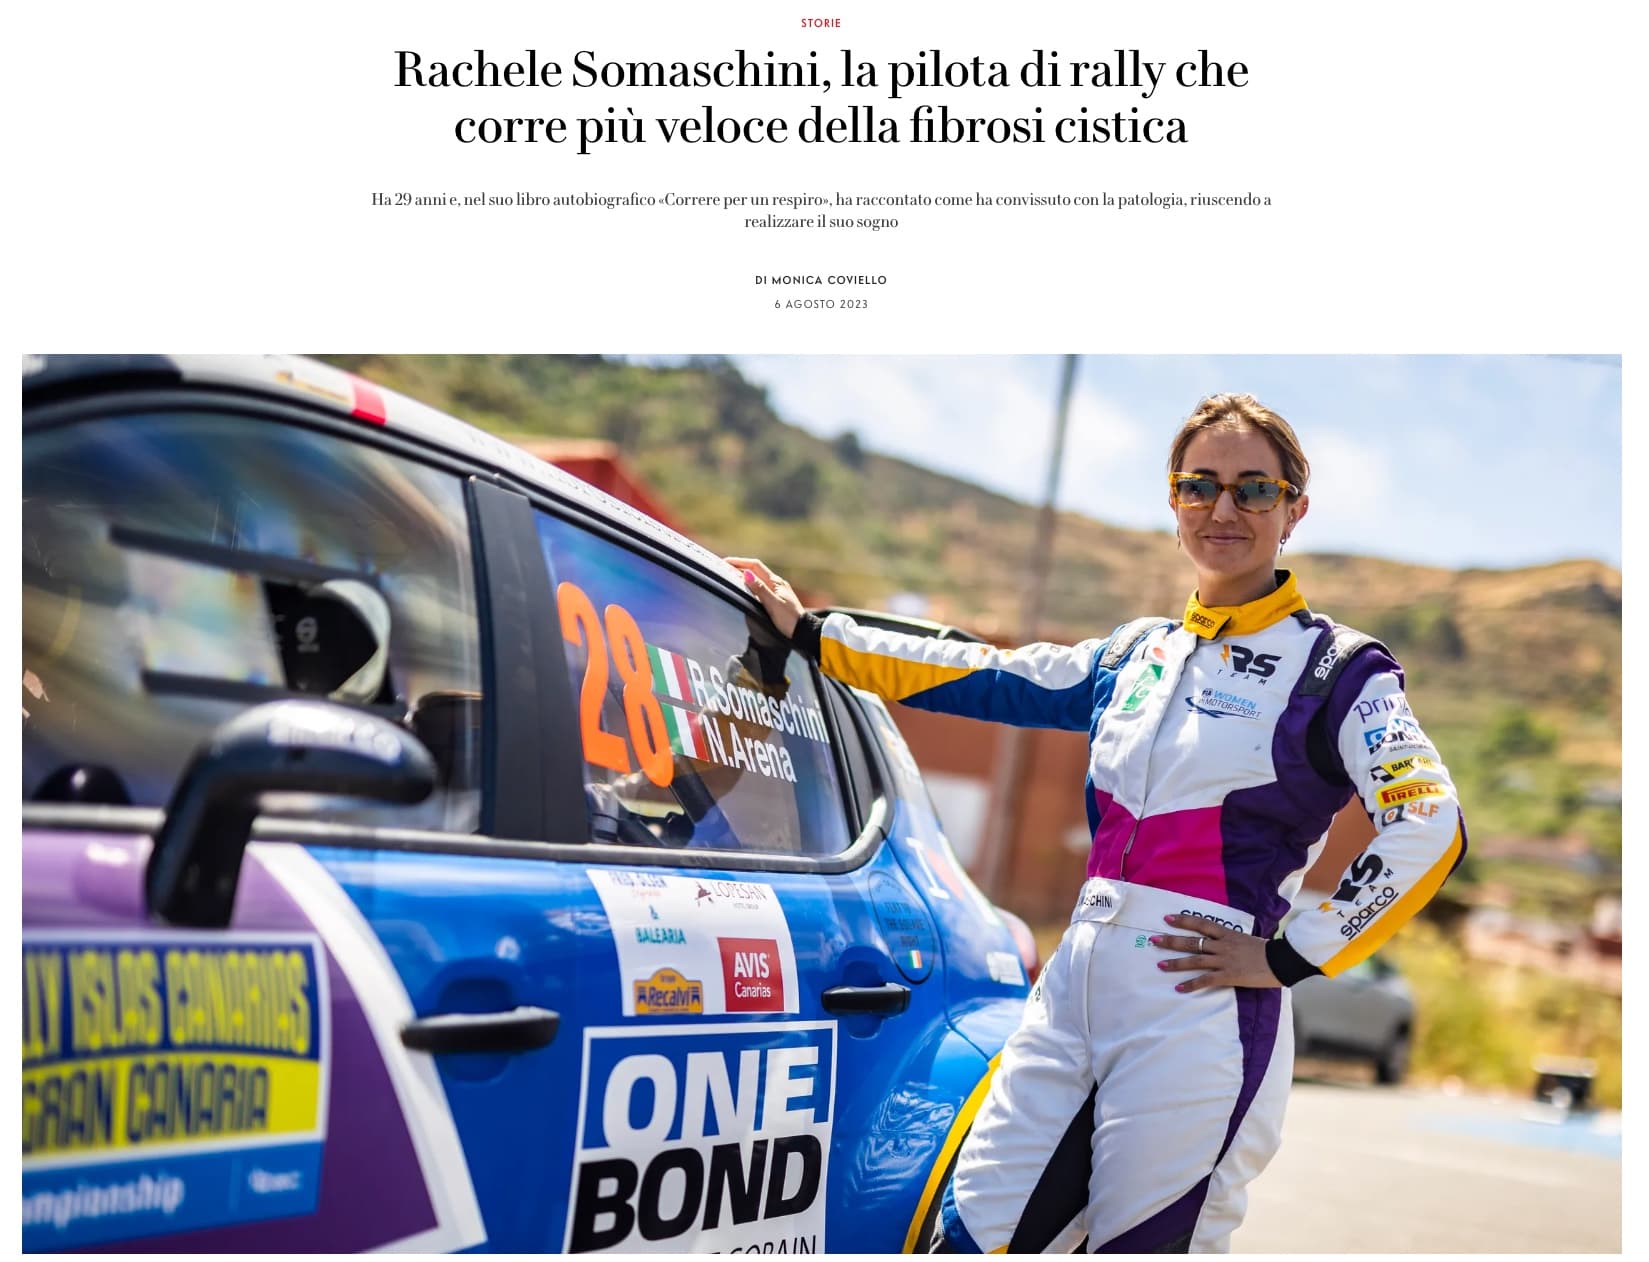 Rachele Somaschini, la pilota di rally che corre più veloce della fibrosi cistica